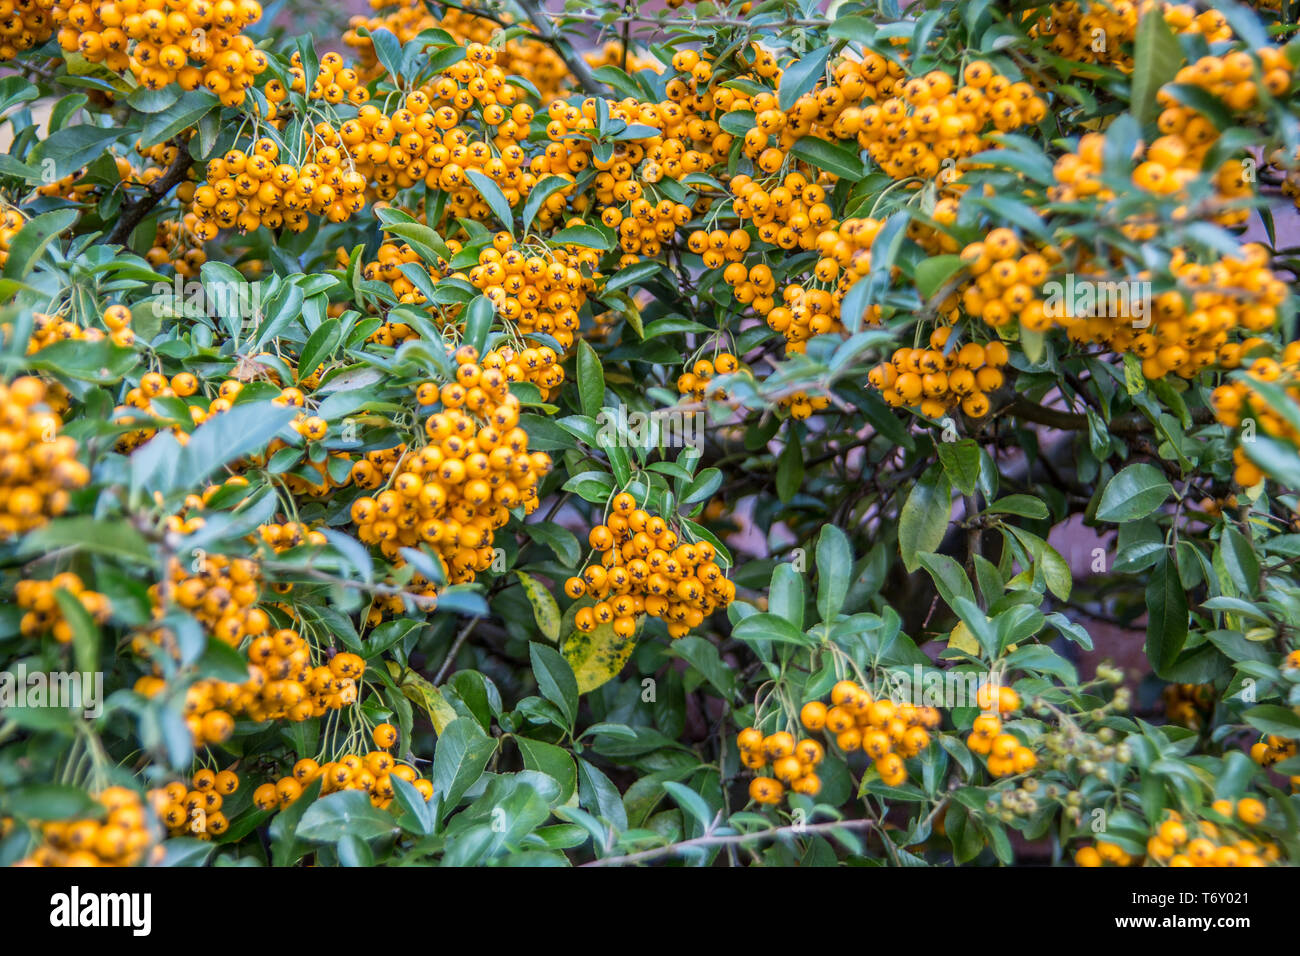 Firethorn evergreen shrub with yellow berries Stock Photo